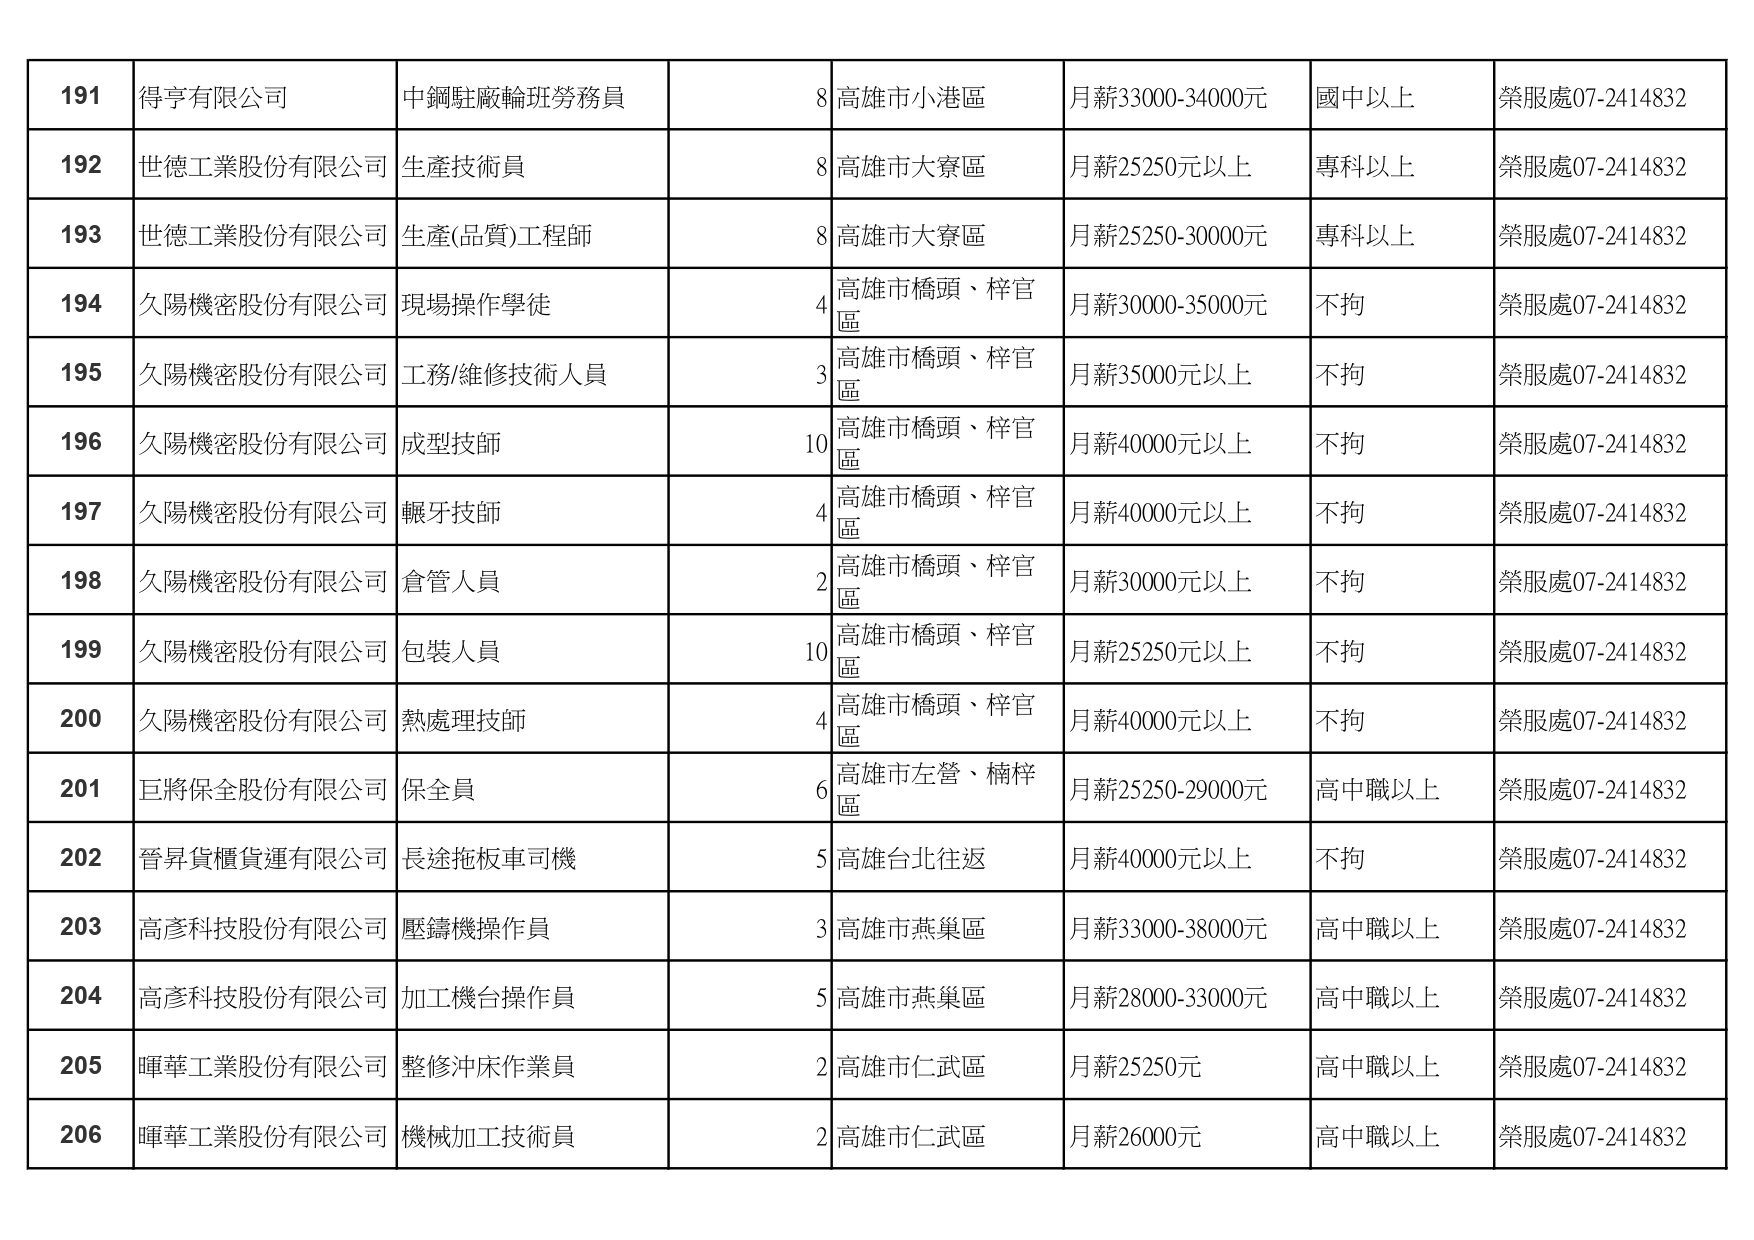 高雄榮服處-廠商職缺列表111.1.20_pages-to-jpg-0013